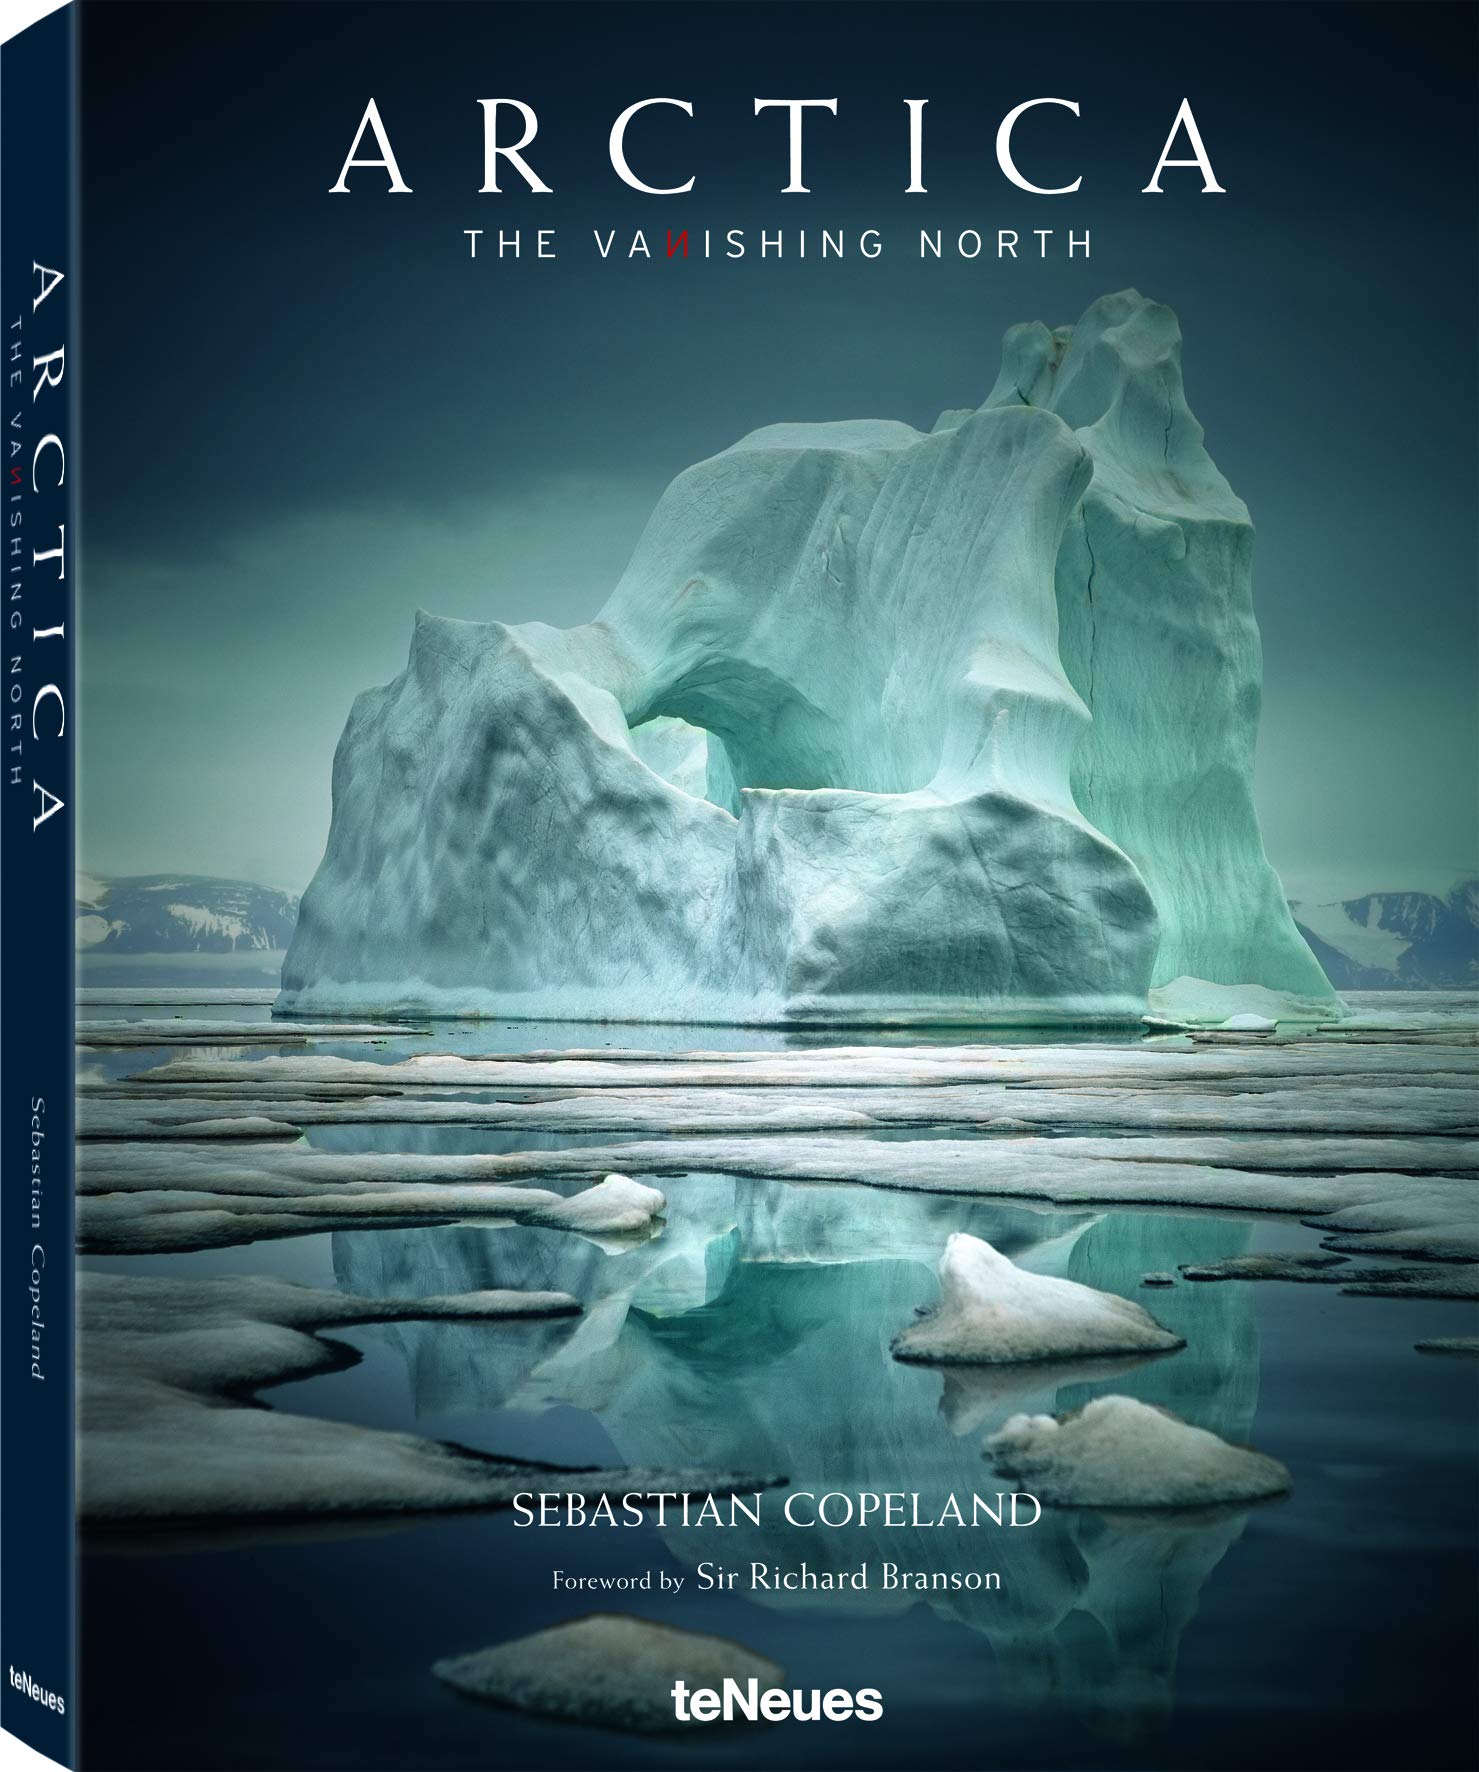 Fotoboek Arctica | teNeues de zwerver